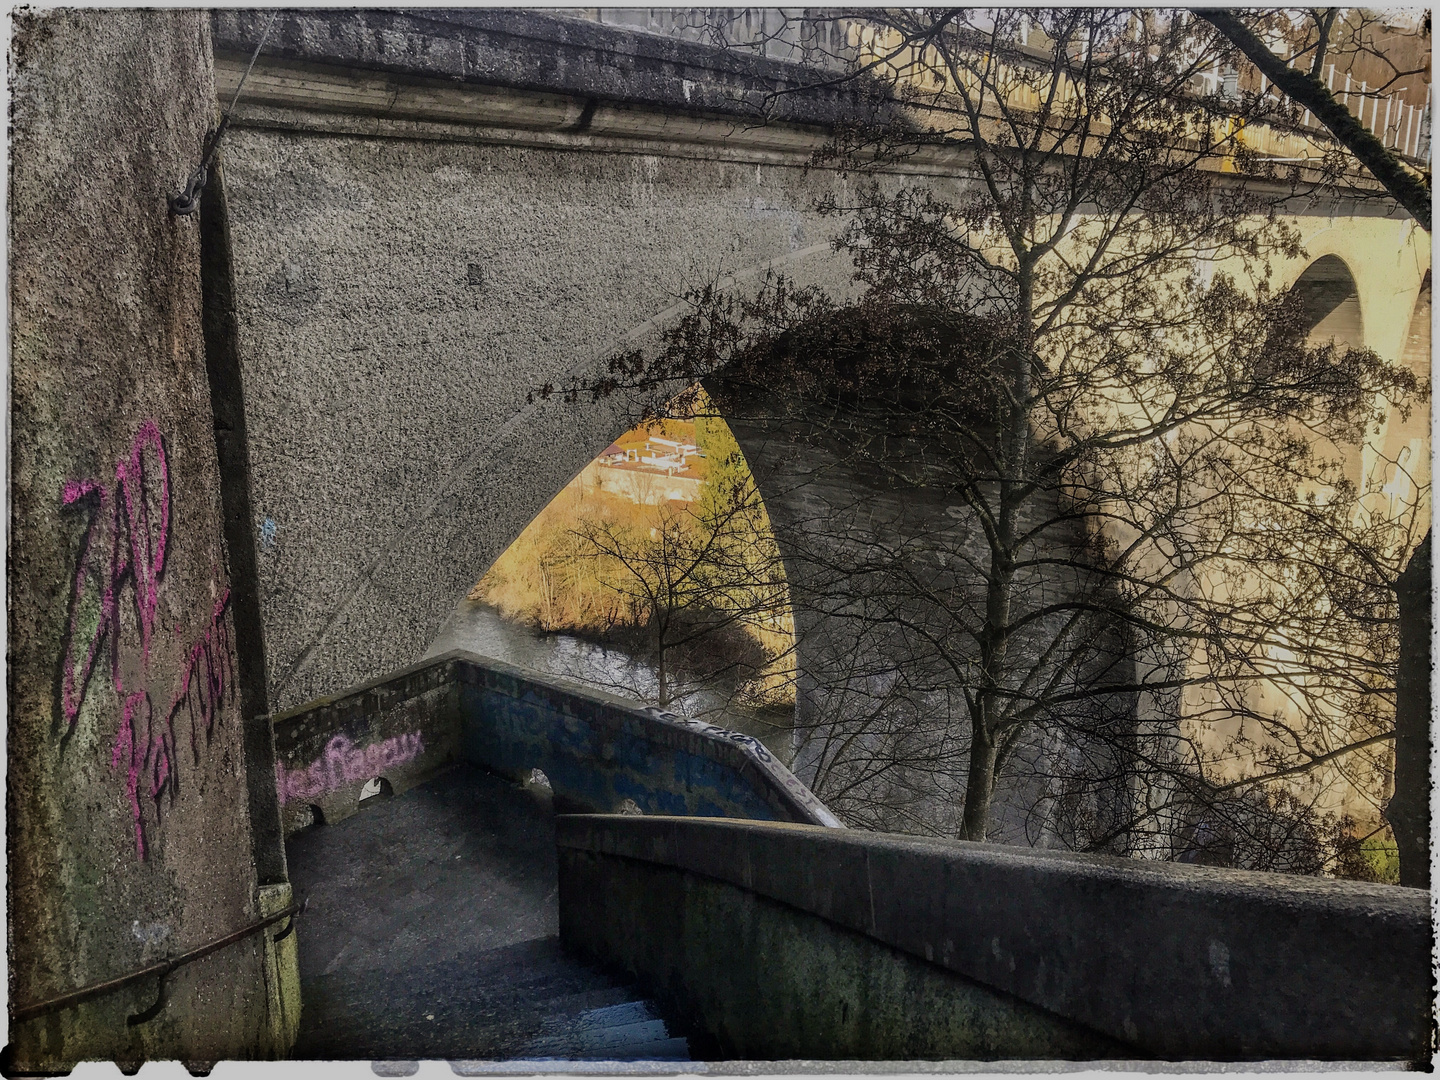 Escaliers du Pont de Zaeringen